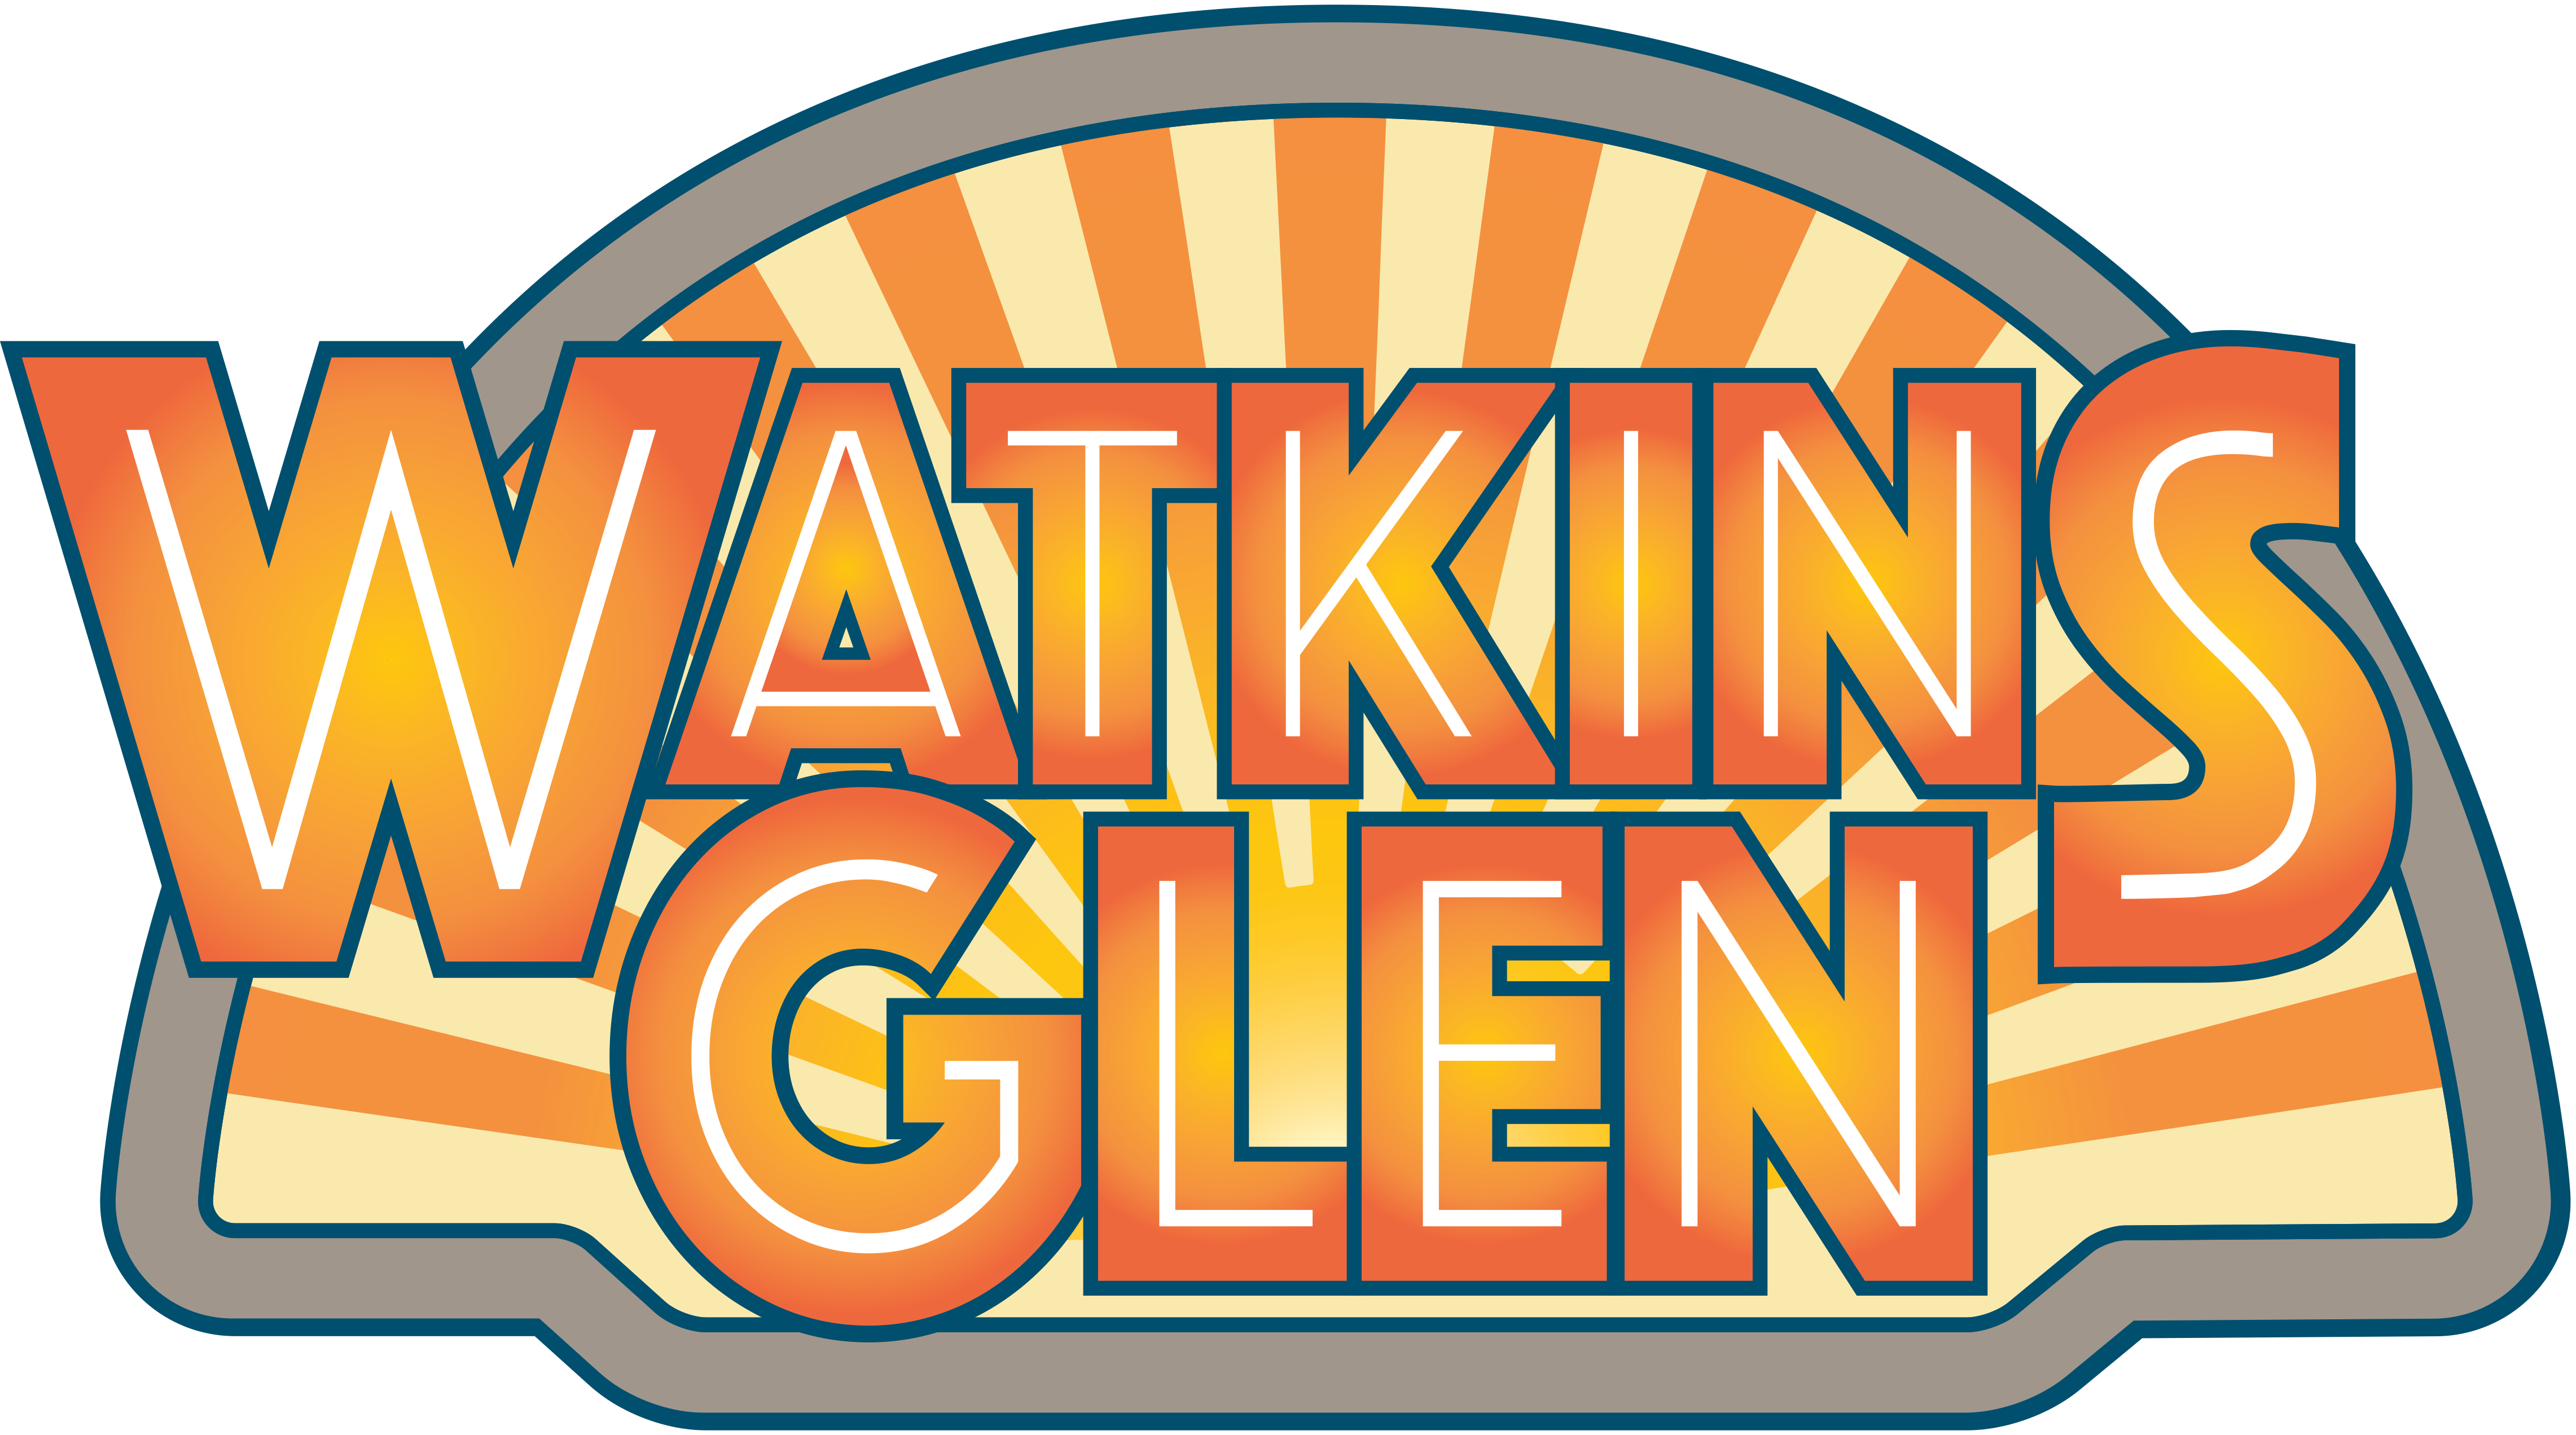 Watkins Glen - Home